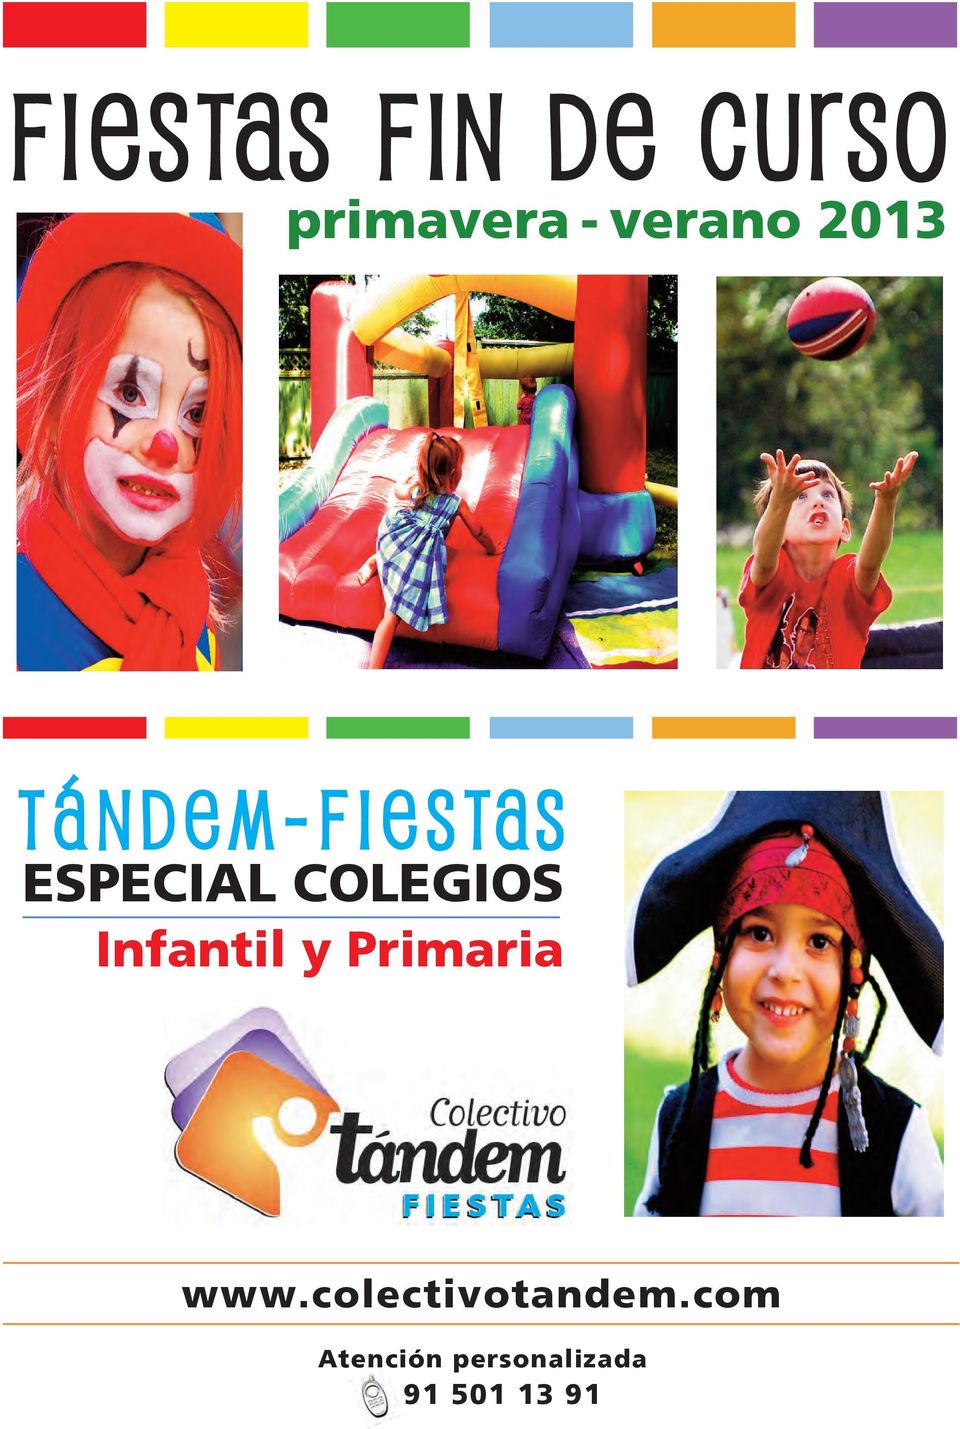 Infantil y Primaria www.colectivotandem.